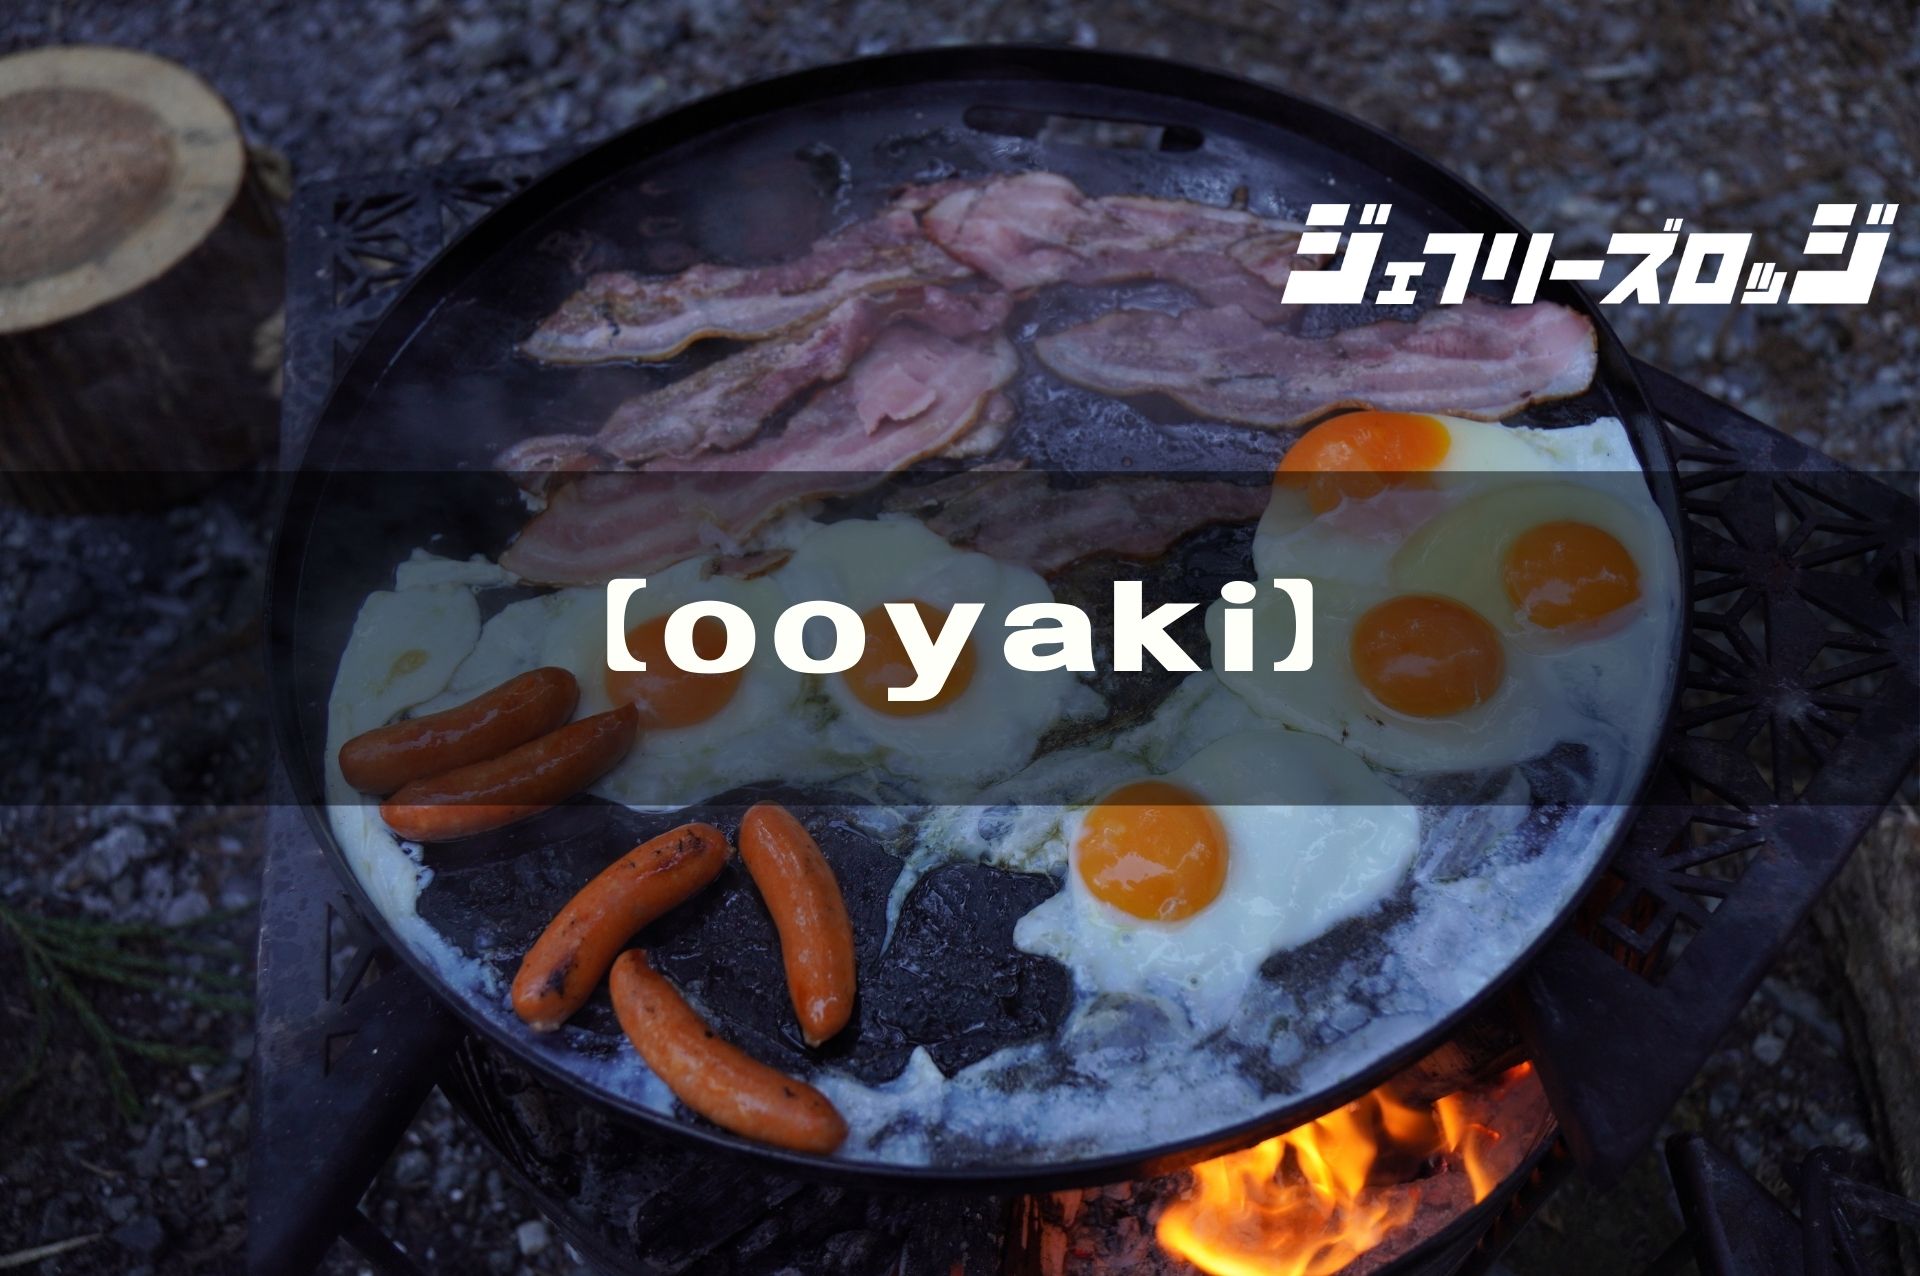 ooyaki (オオヤキ)】 男のロマン巨大鉄板 by sanzoku mountain｜JEFFREY's LODGE (ジェフリーズロッジ)